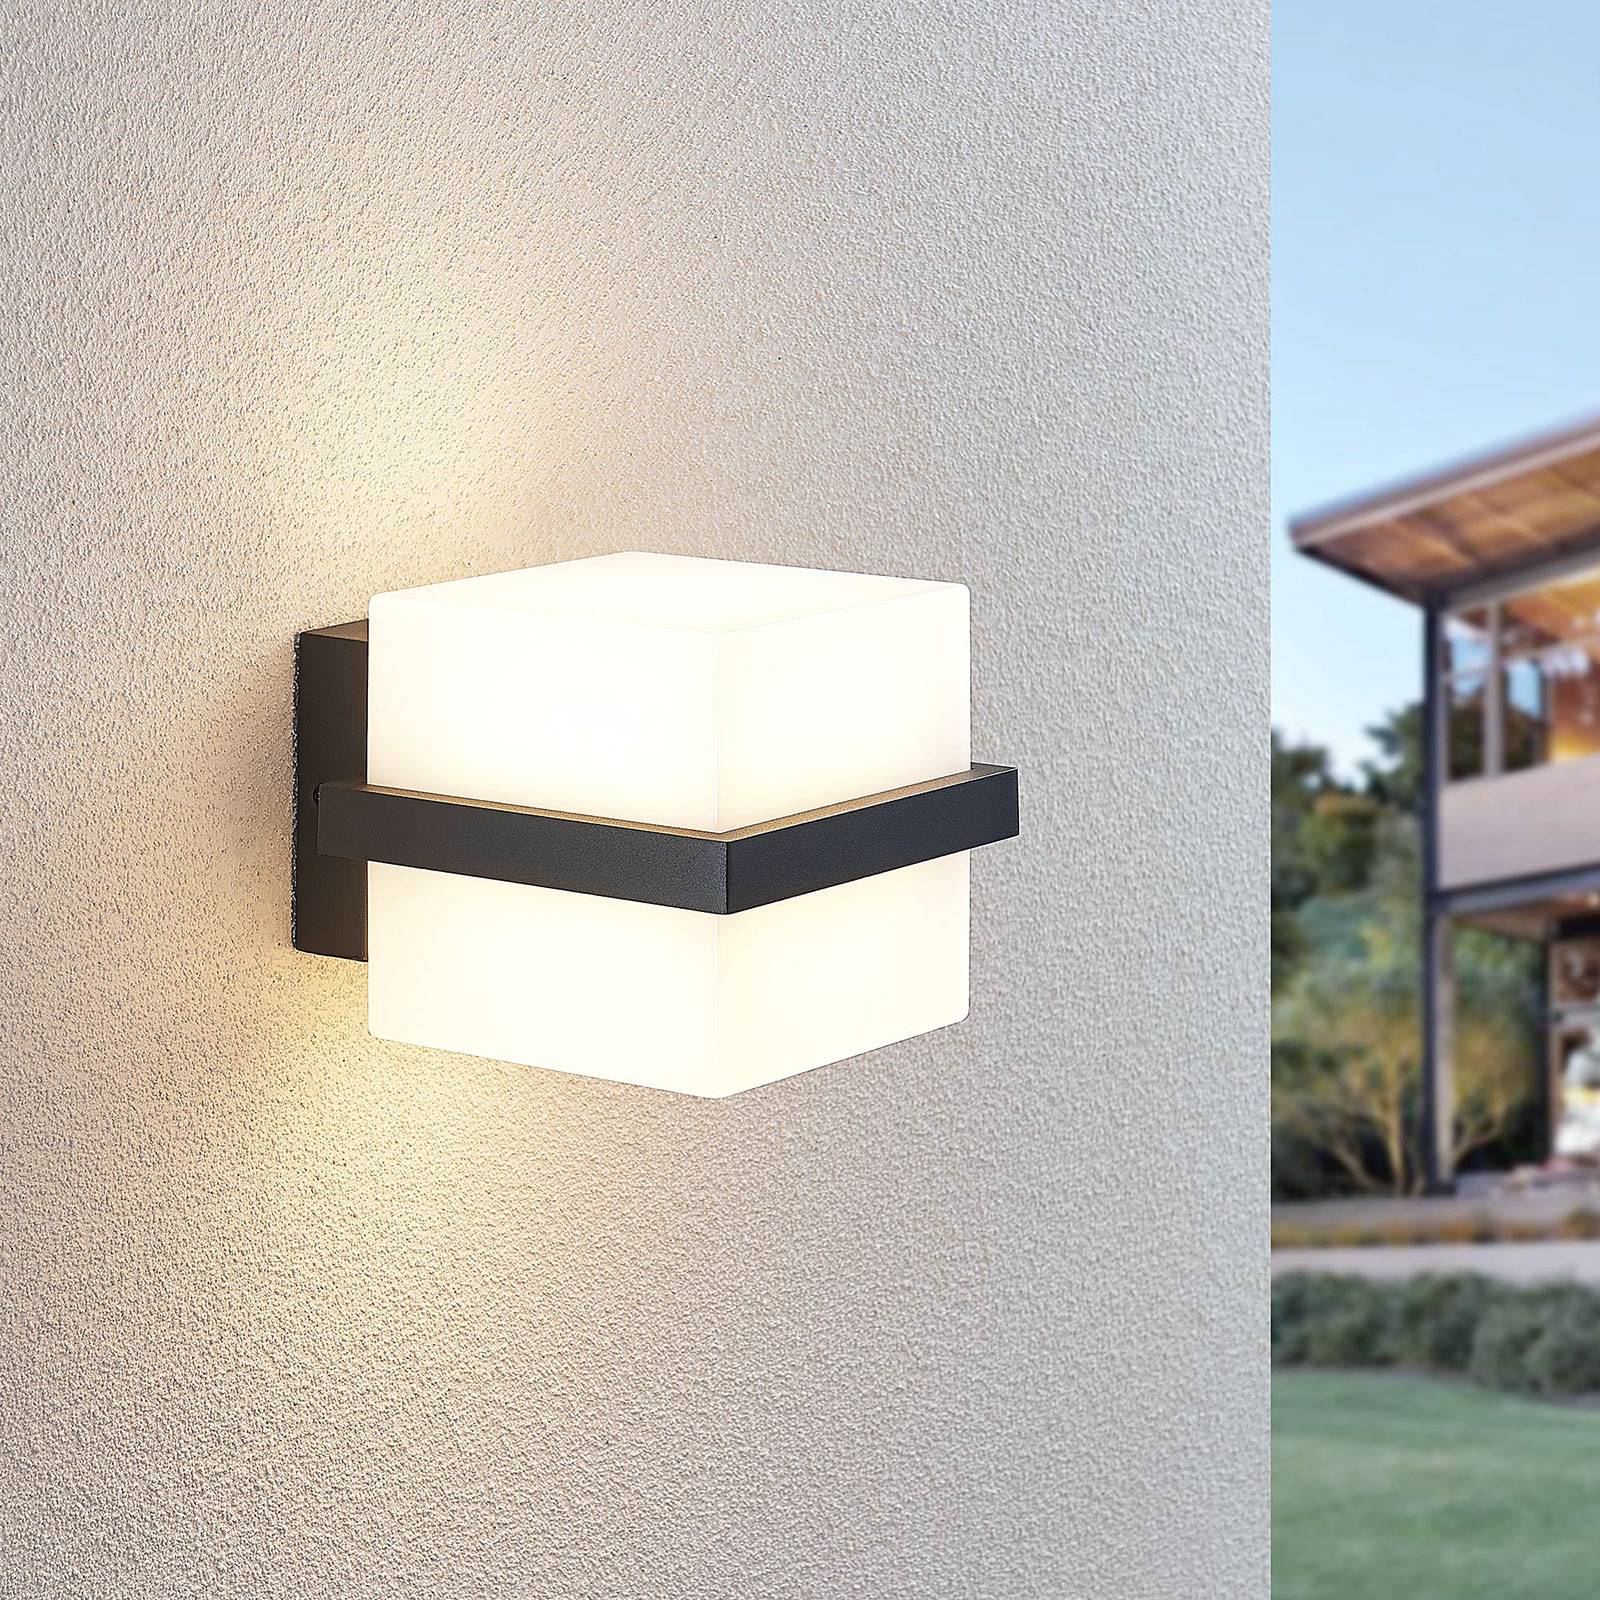 Lindby LED venkovní nástěnná svítilna Auron, tvar krychle